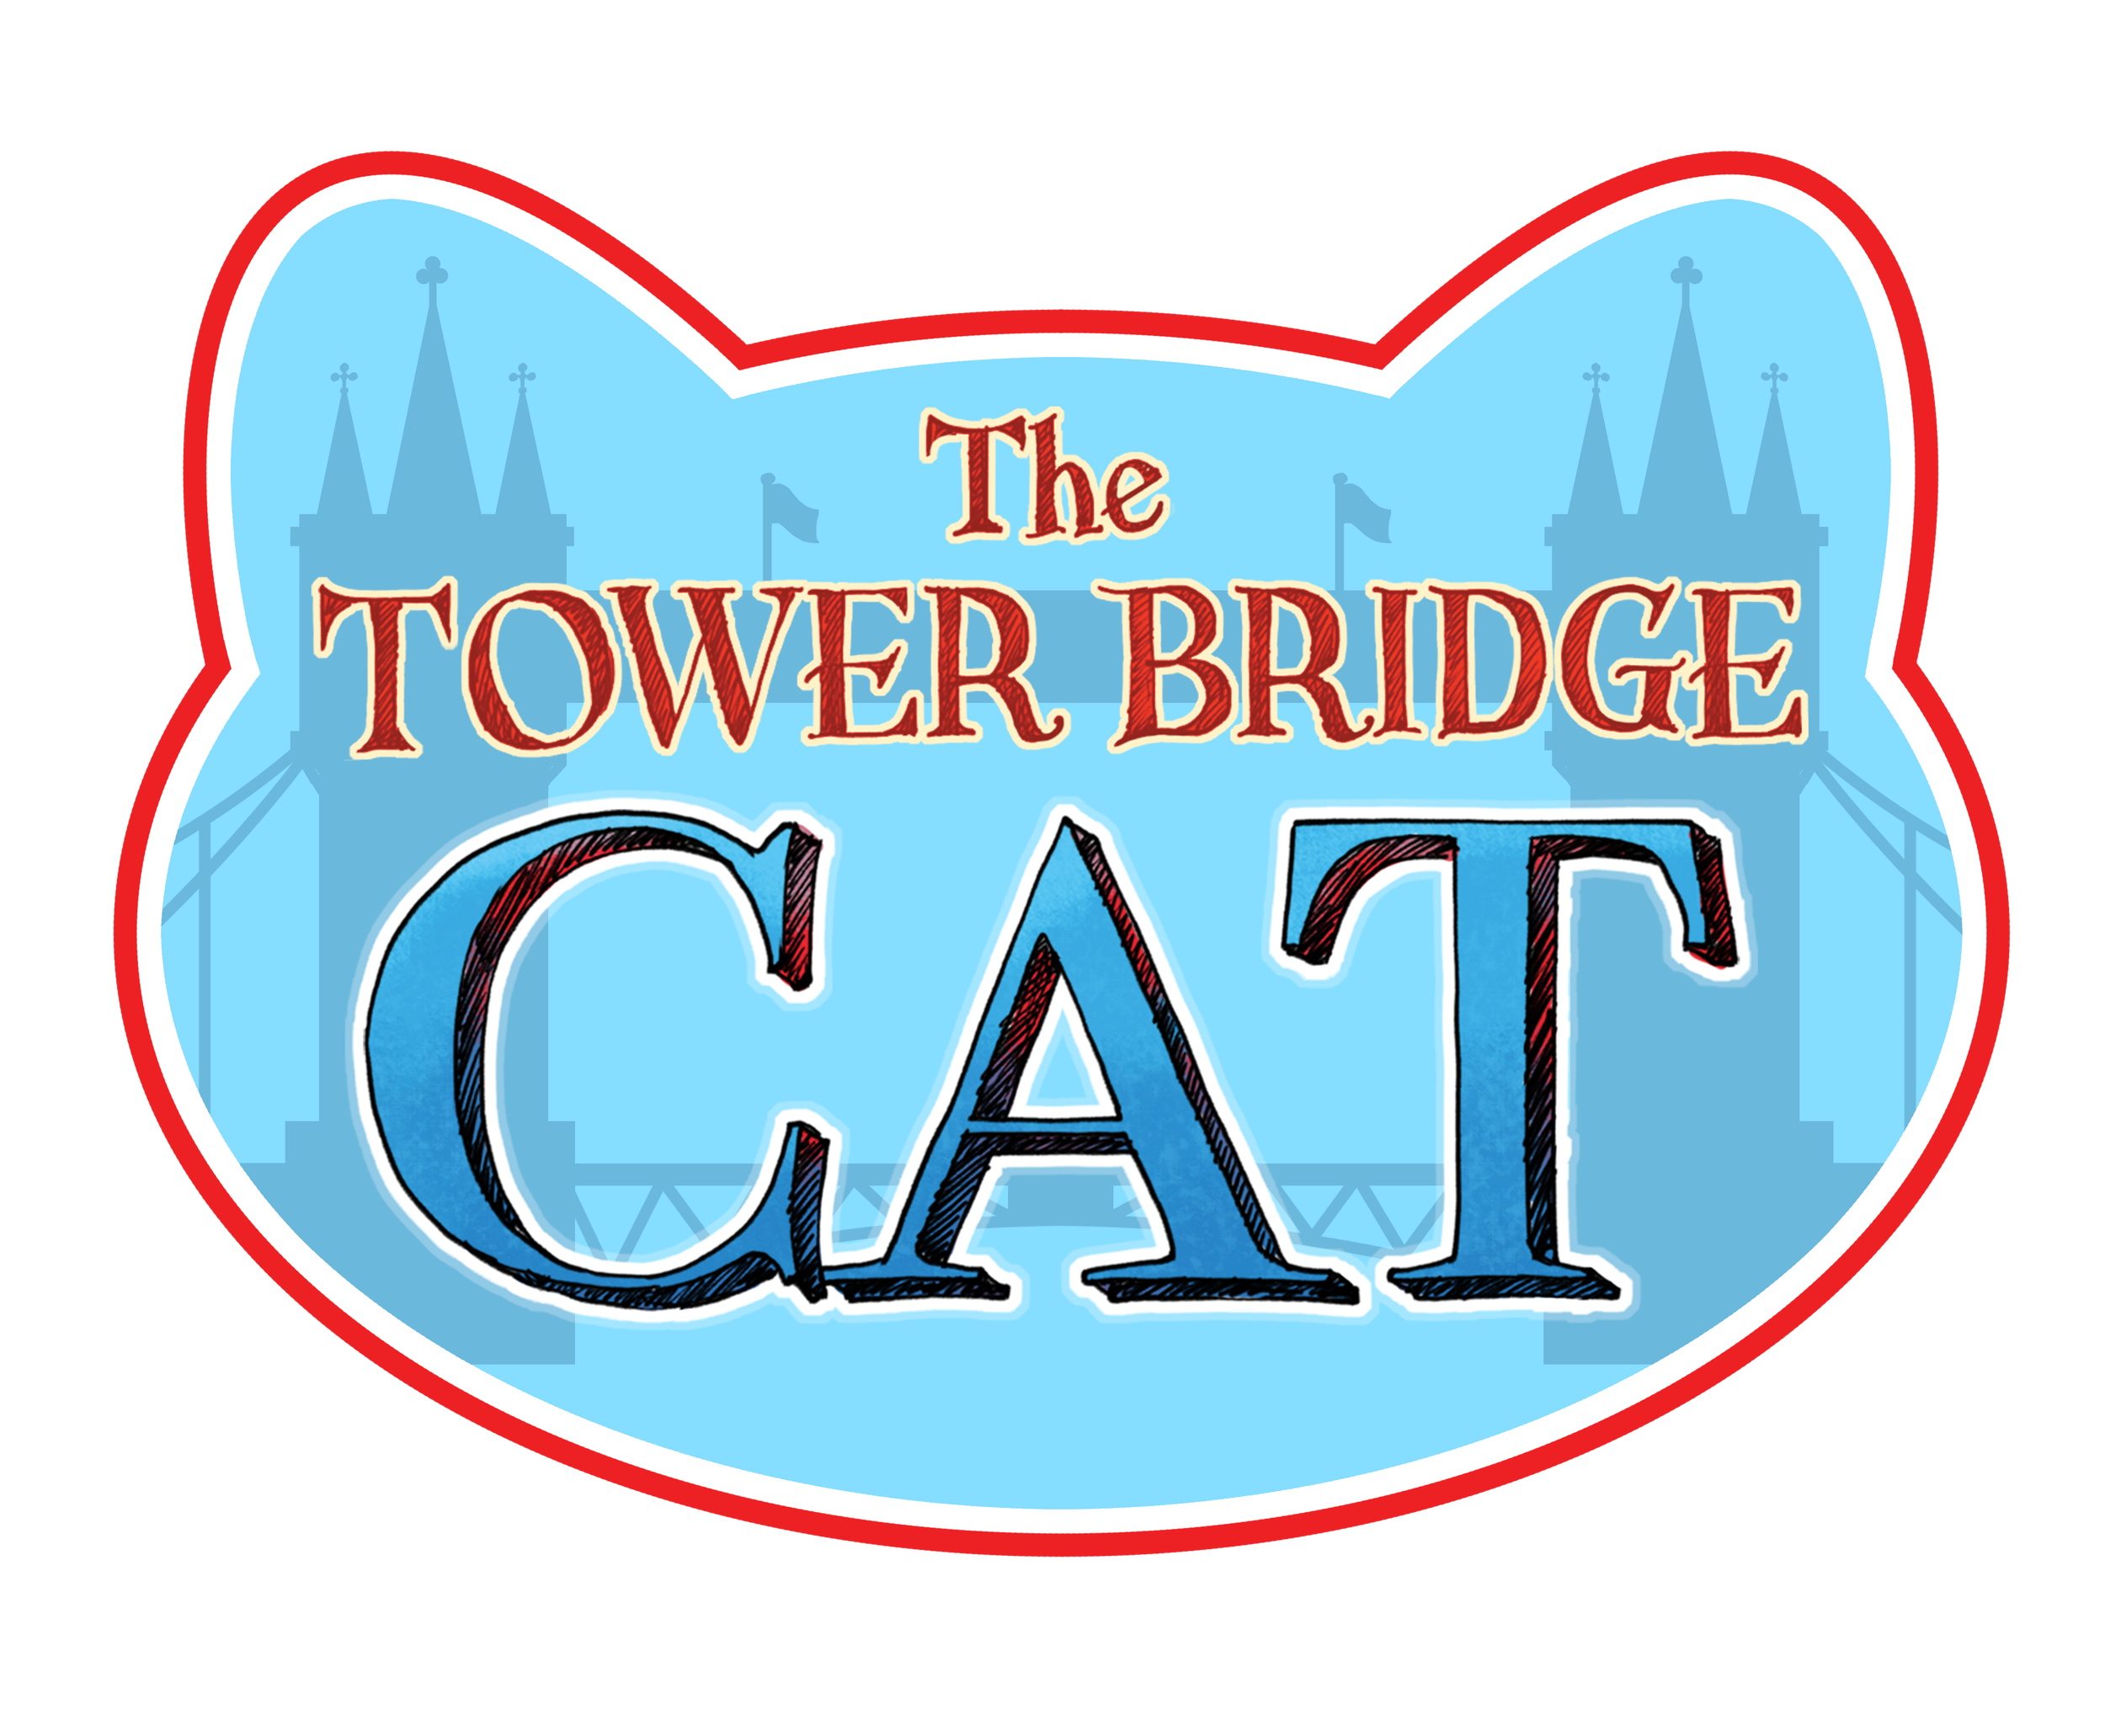 The Tower Bridge Cat